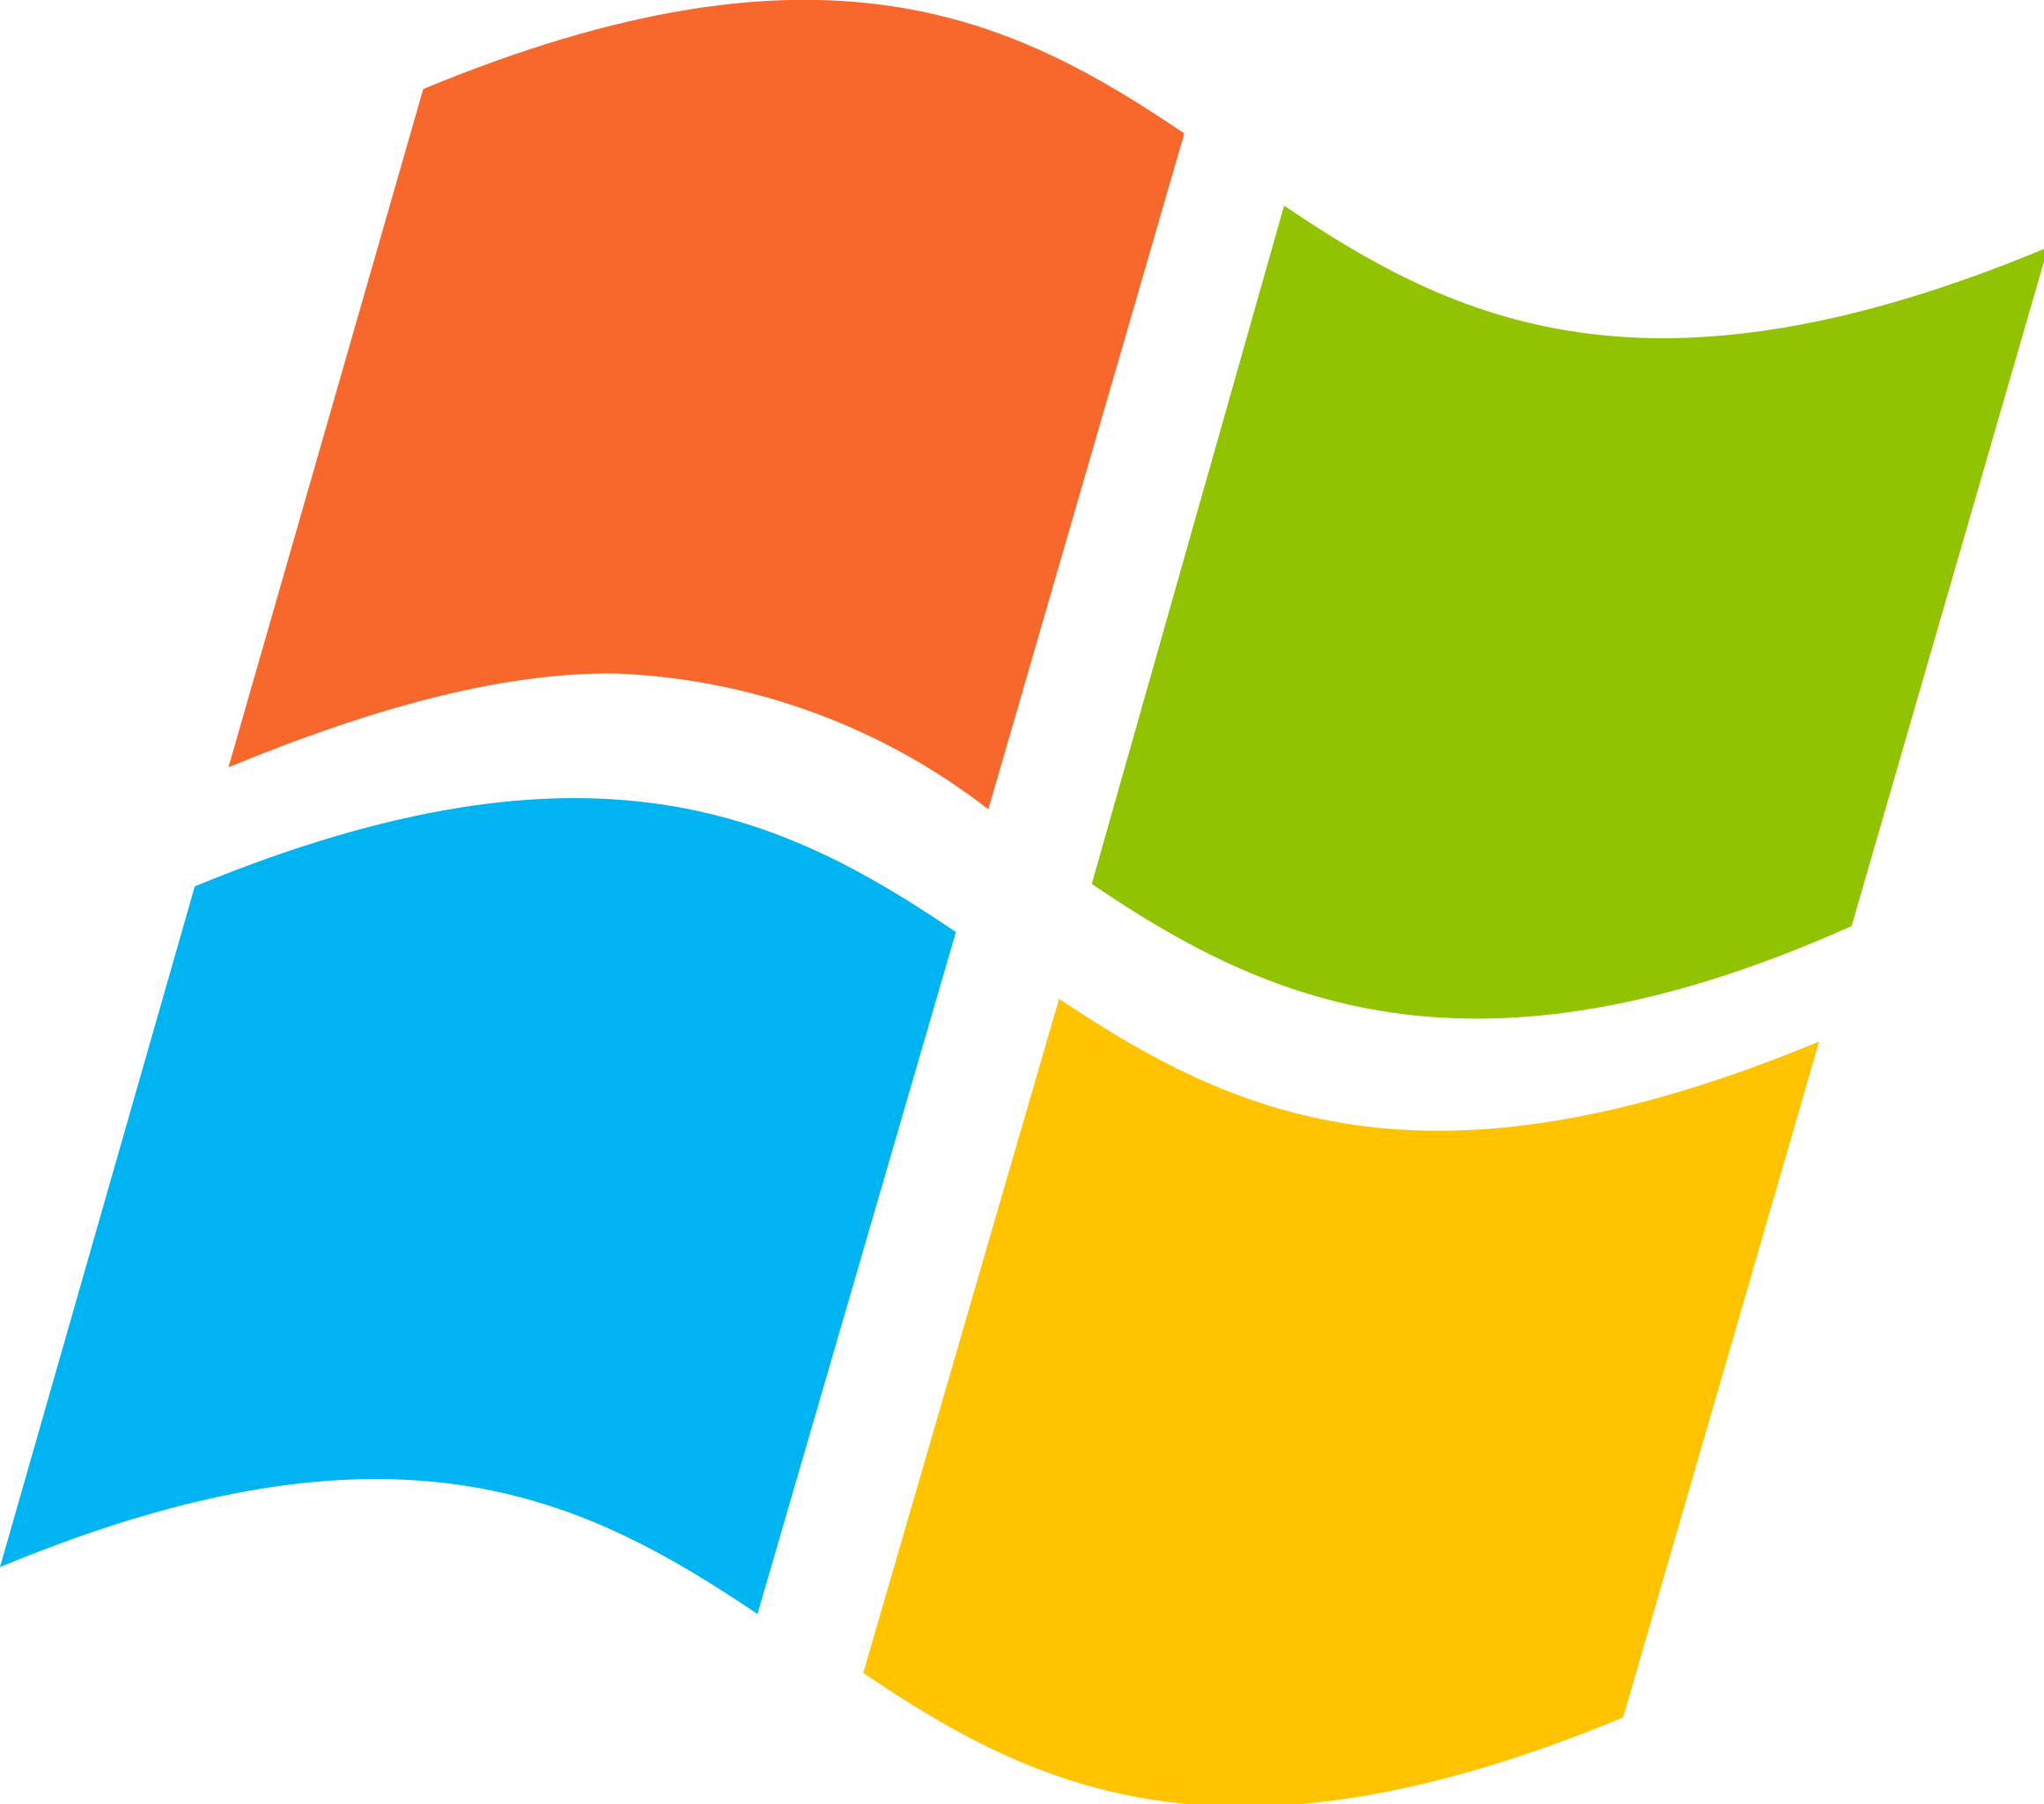 File:Microsoft Windows 7 logotype.png - Wikimedia Commons